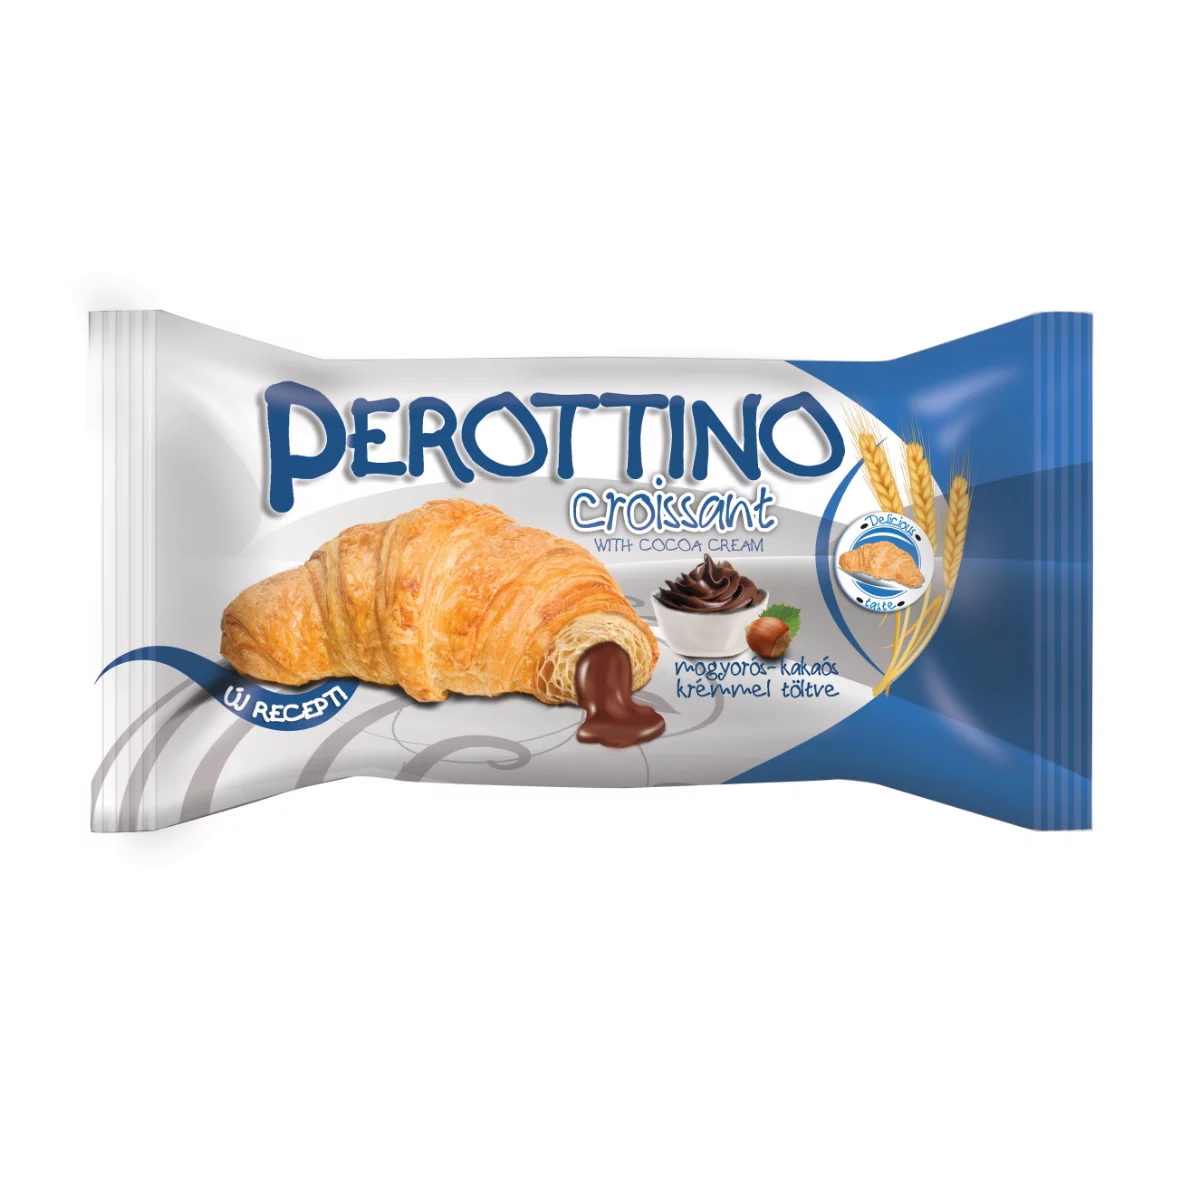 Perottino croissant 55g kakaós krémmel töltve